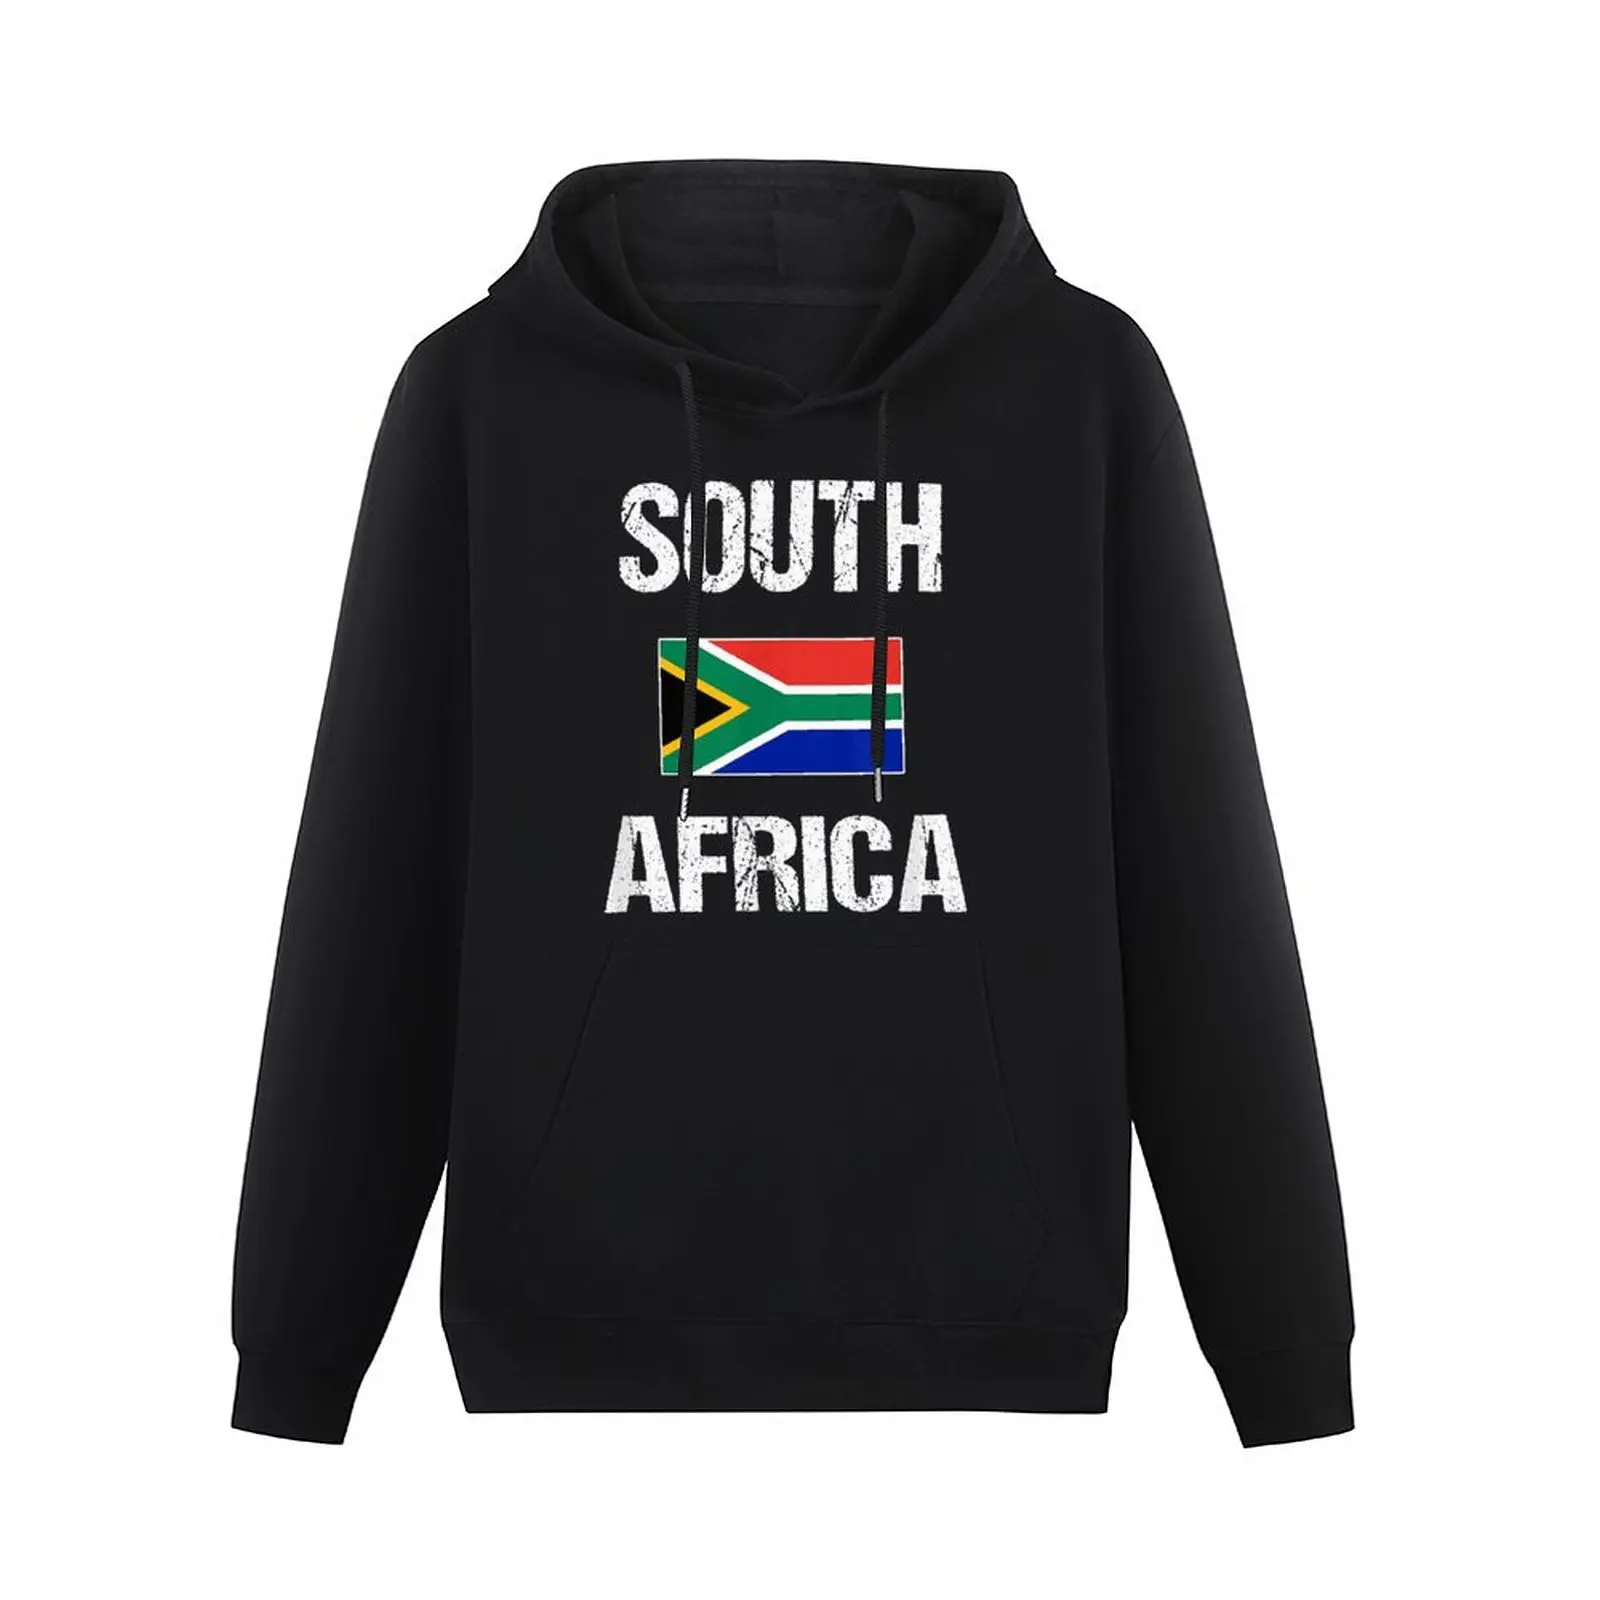 

Толстовка унисекс с капюшоном, хлопок, флаг Южной Африки, Карта страны Южной Африки, пуловер в стиле хип-хоп